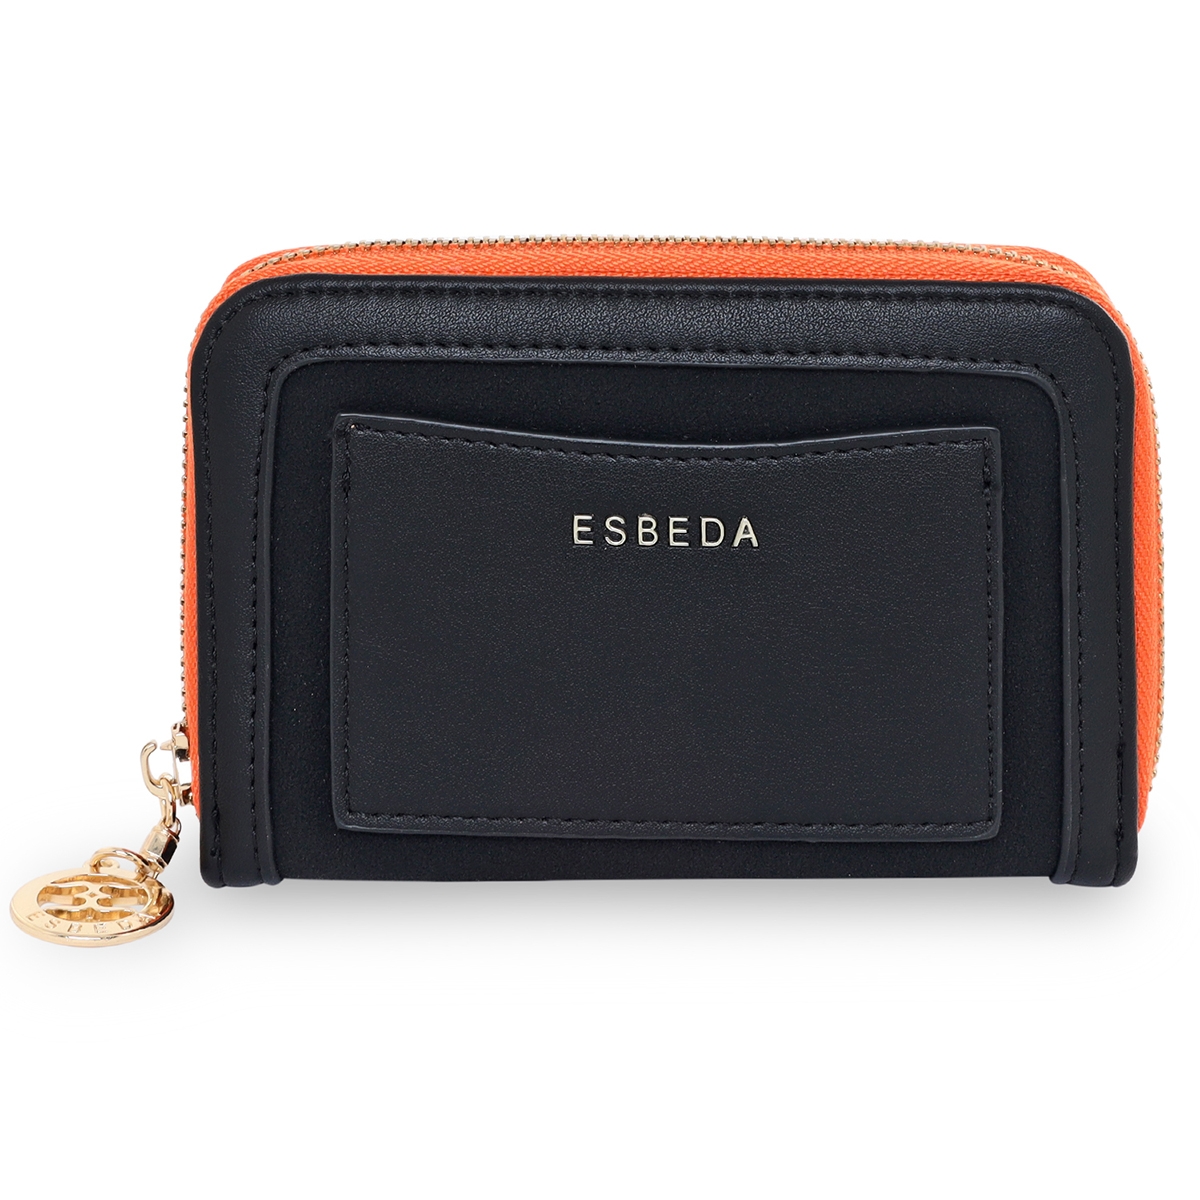 ESBEDA | ESBEDA Black Color Soft Suede Wallet For Women's- Small